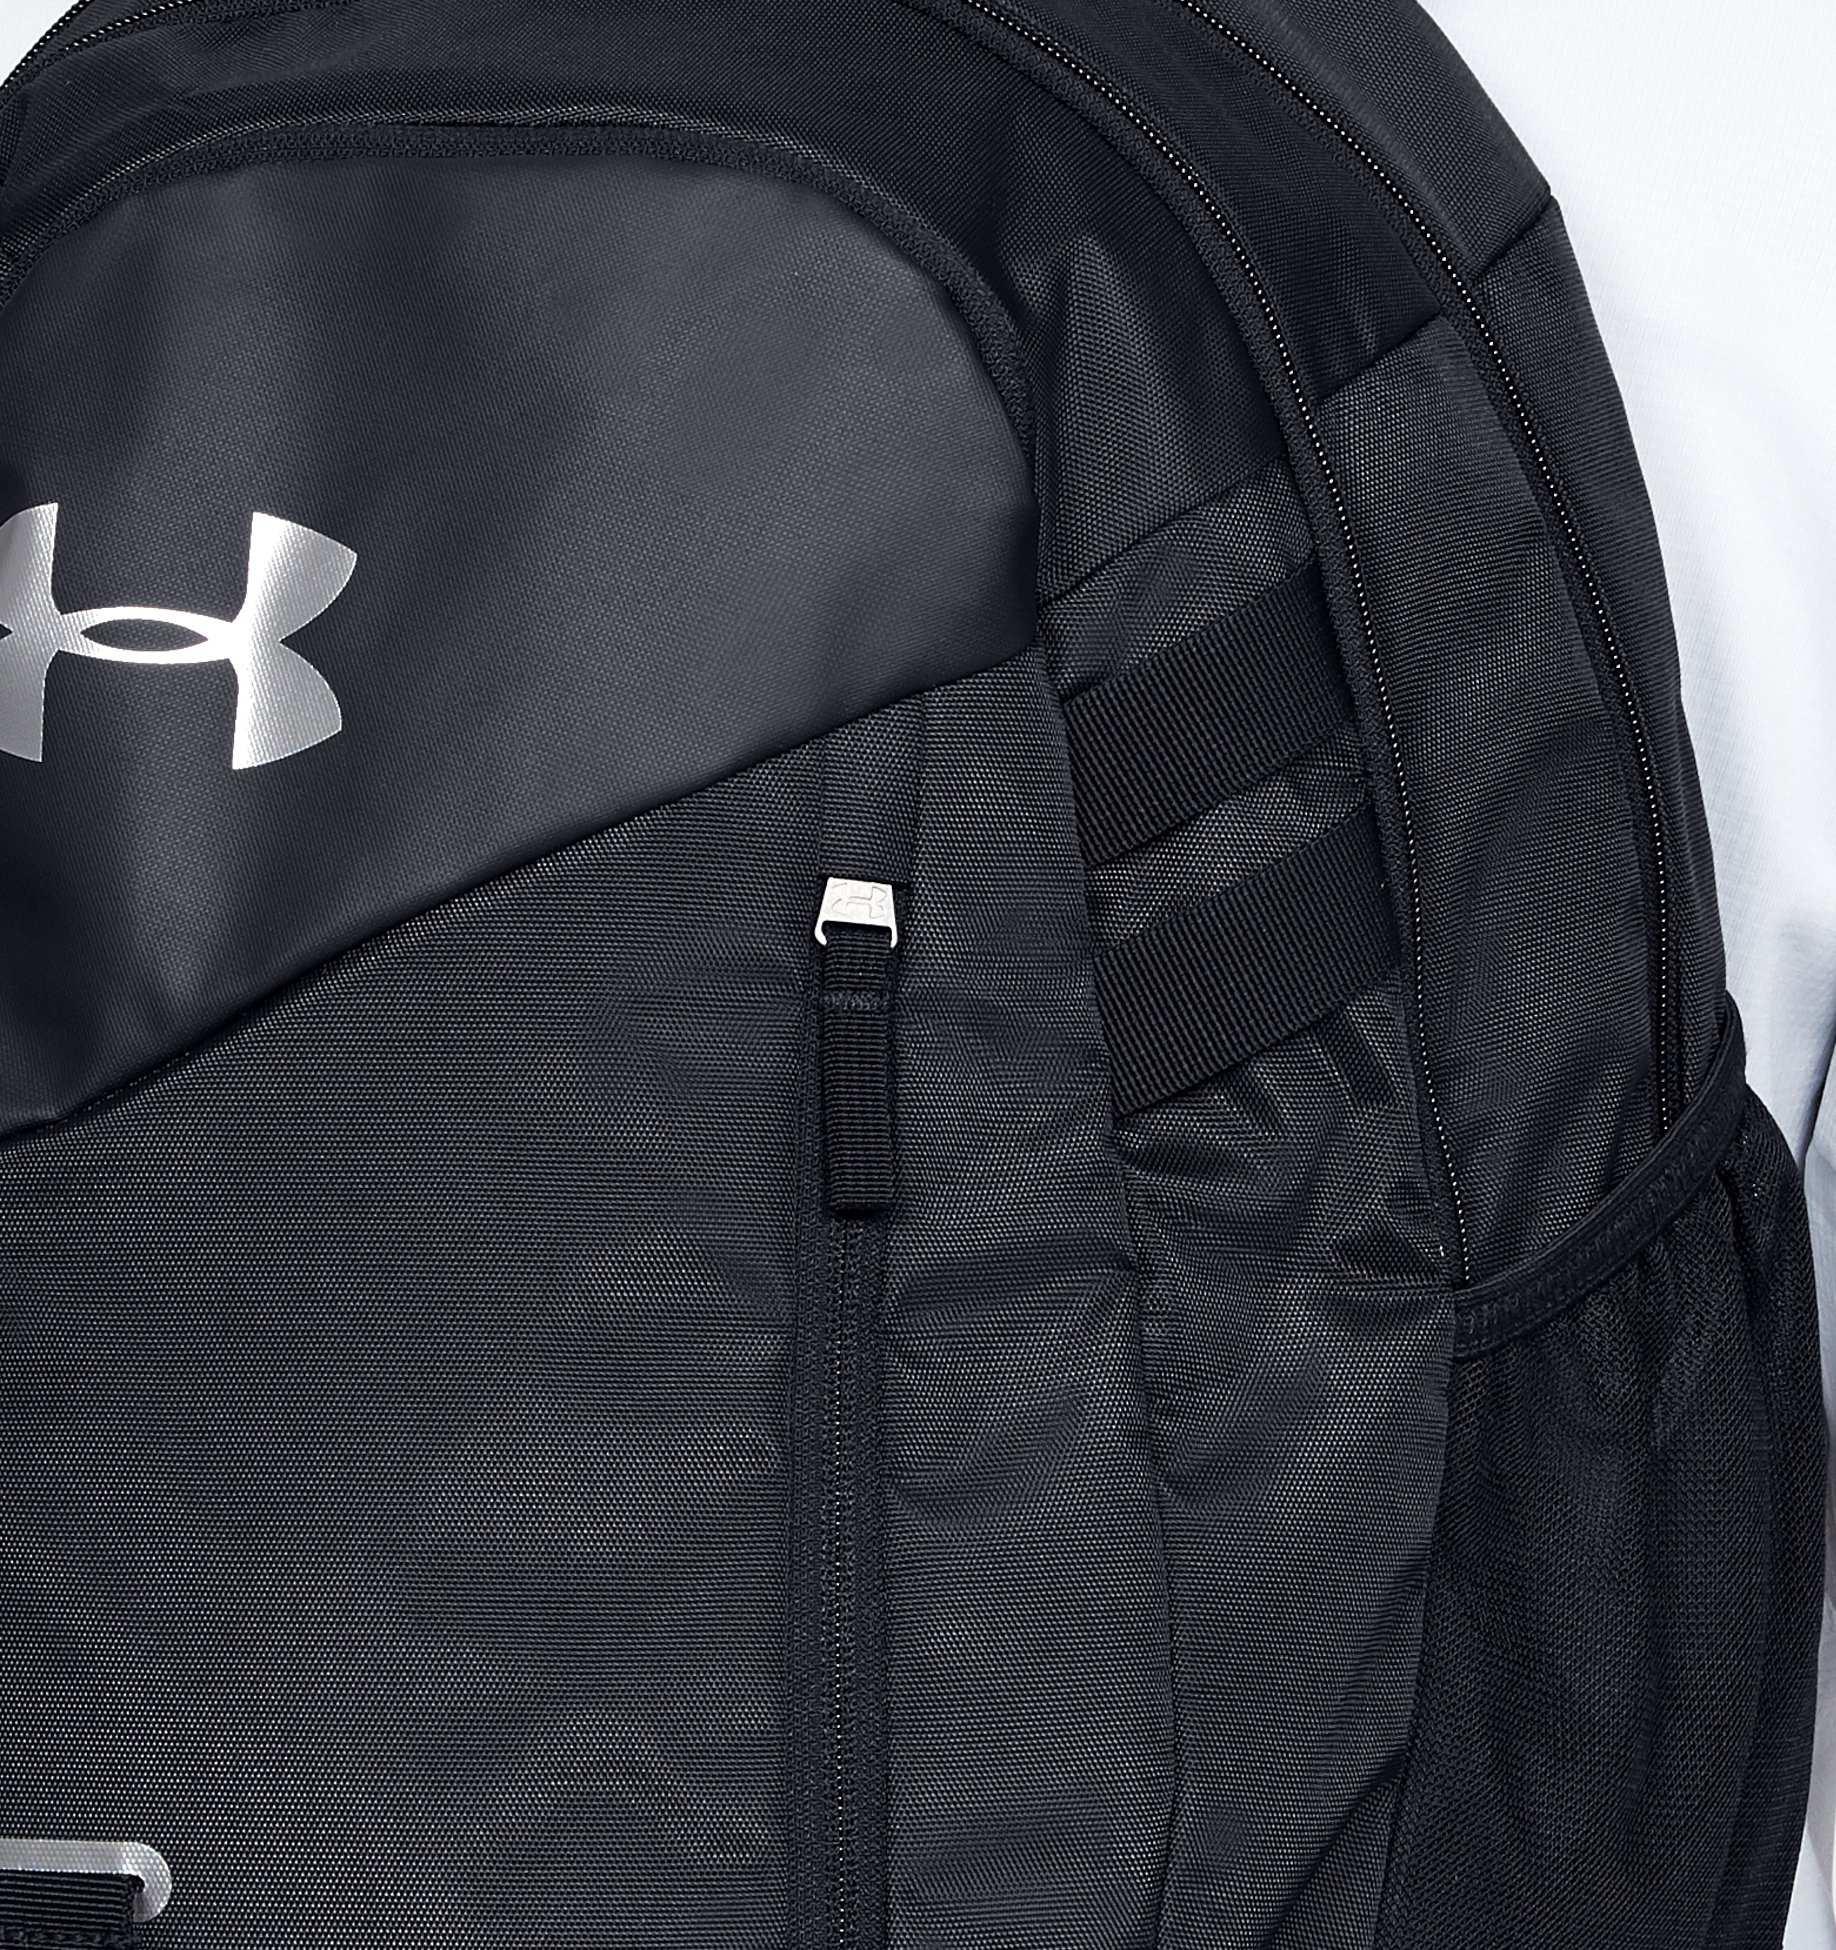 Under Armour UA Hustle Sport Backpack 